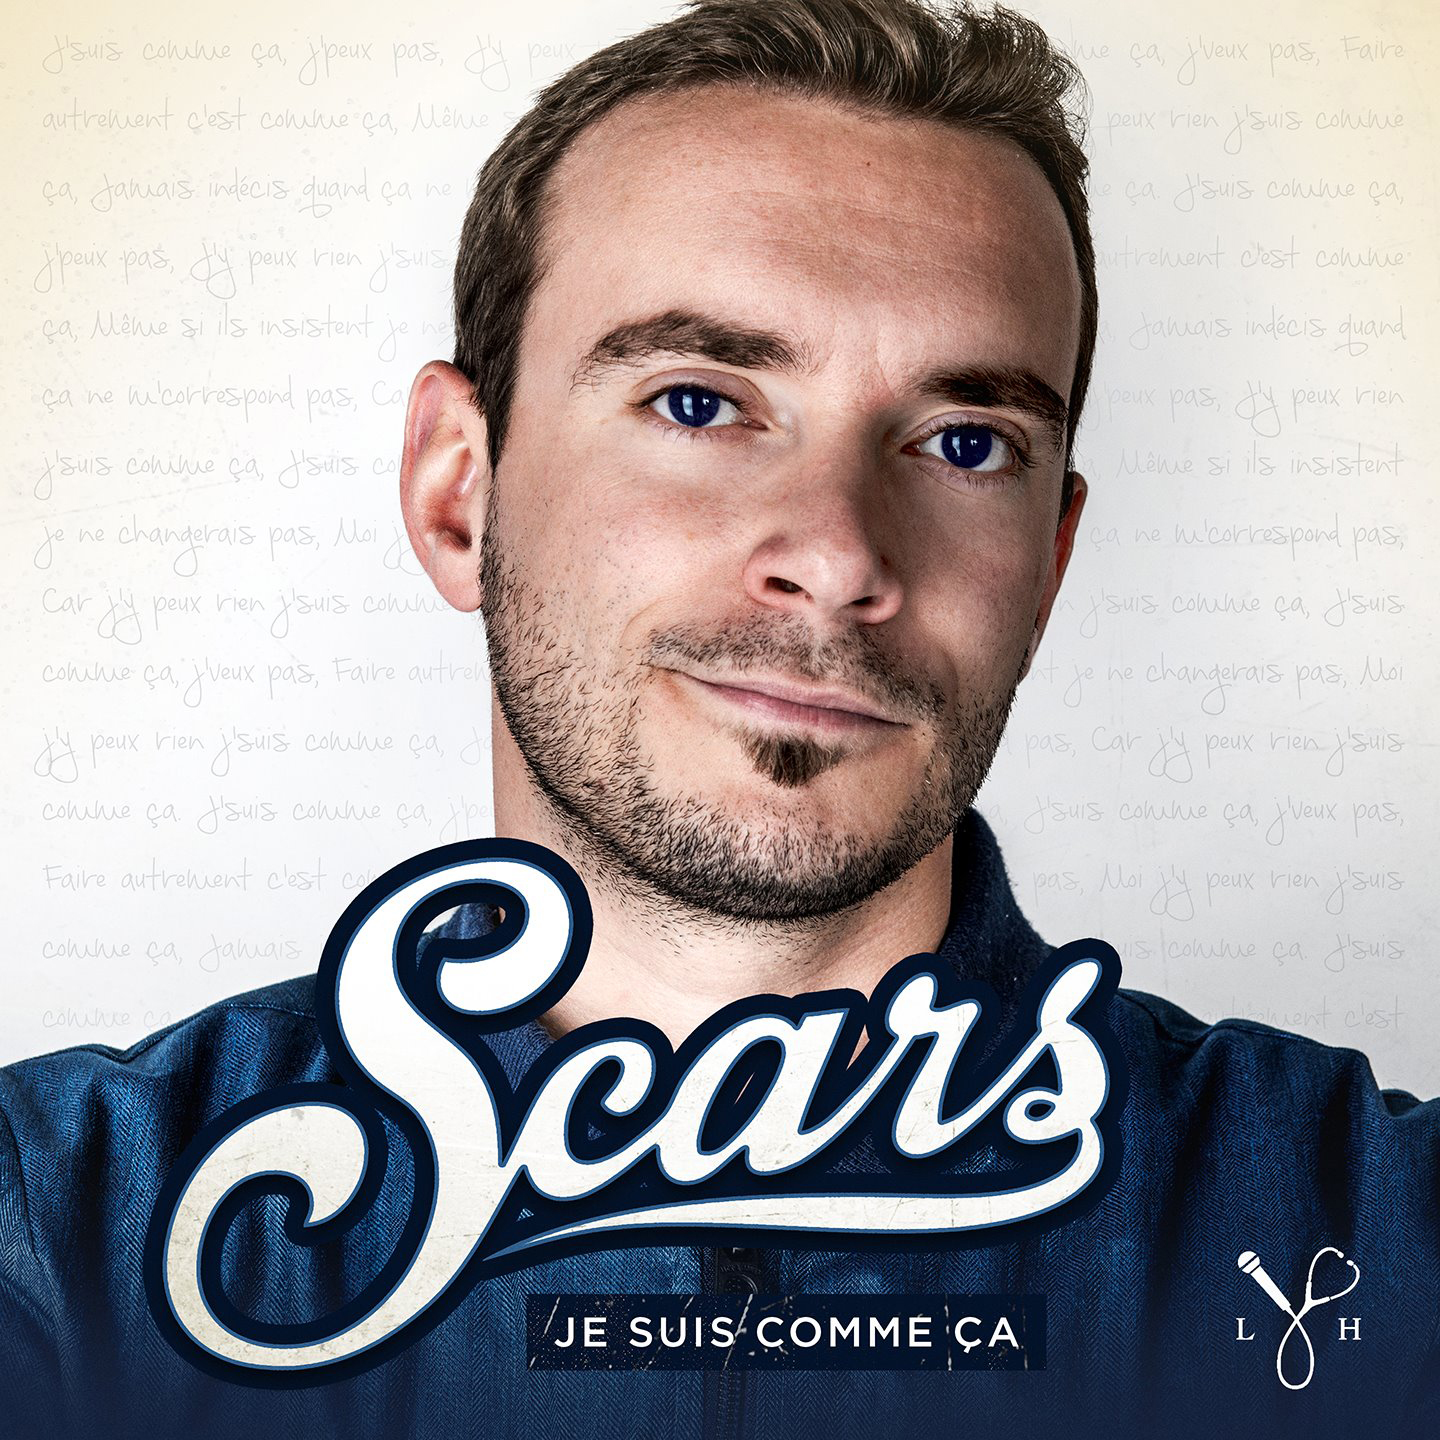 Cover de l'album de Scars - Je suis comme ça. Réalisé par Loseou